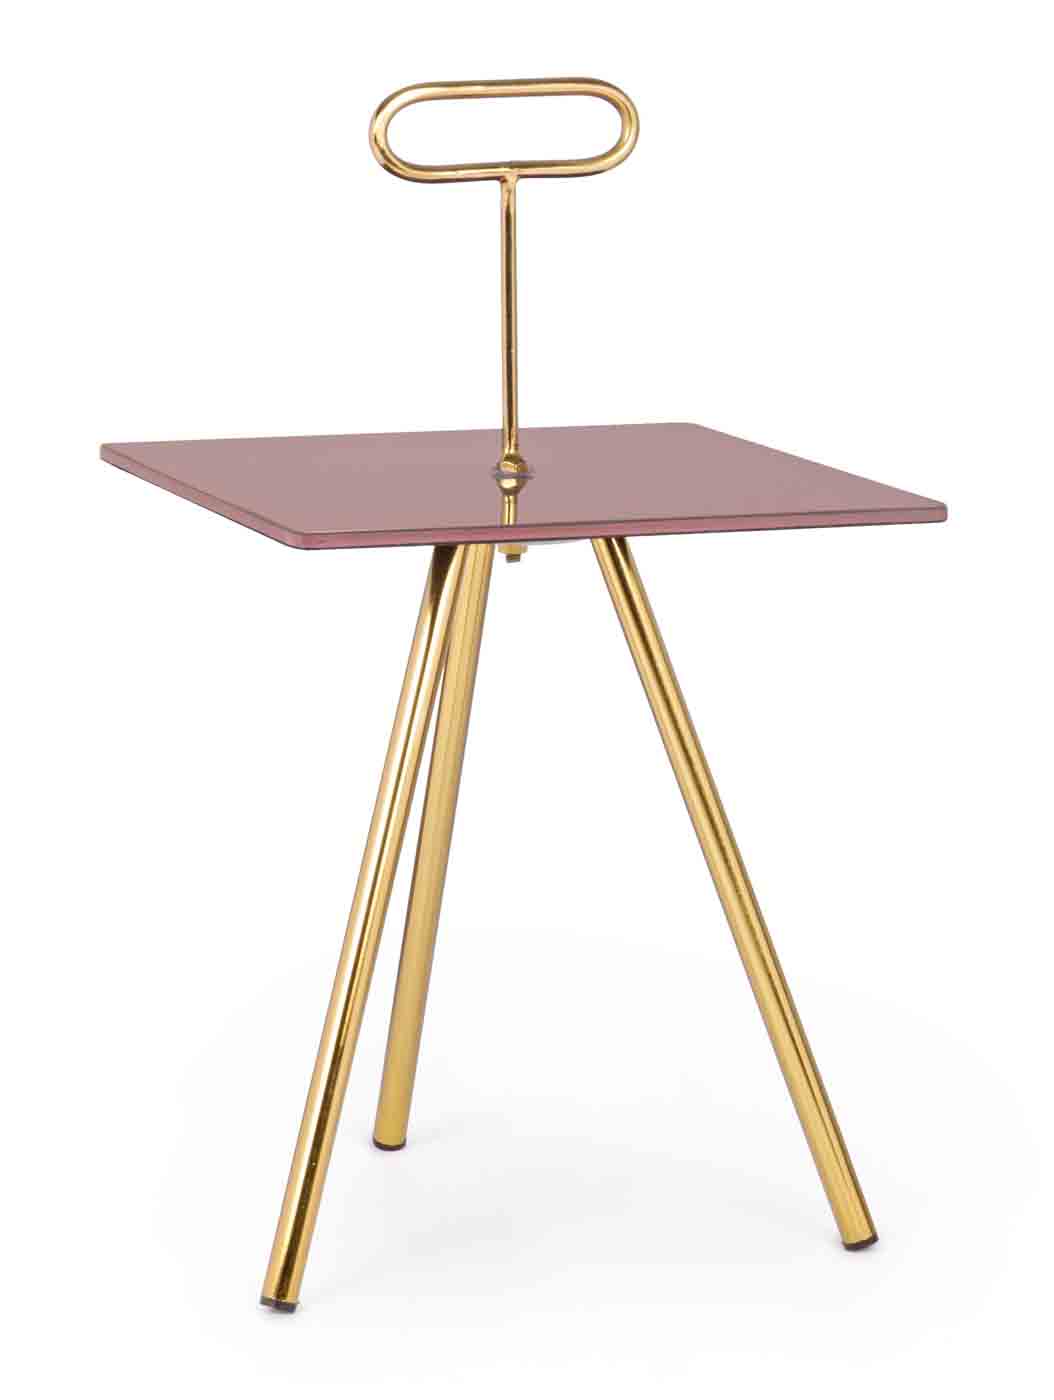 Beistelltisch Inesh gefertigt aus Metall mit einer Glasplatte in einem rosa Farbton. Modernes Design. Marke Bizotto.